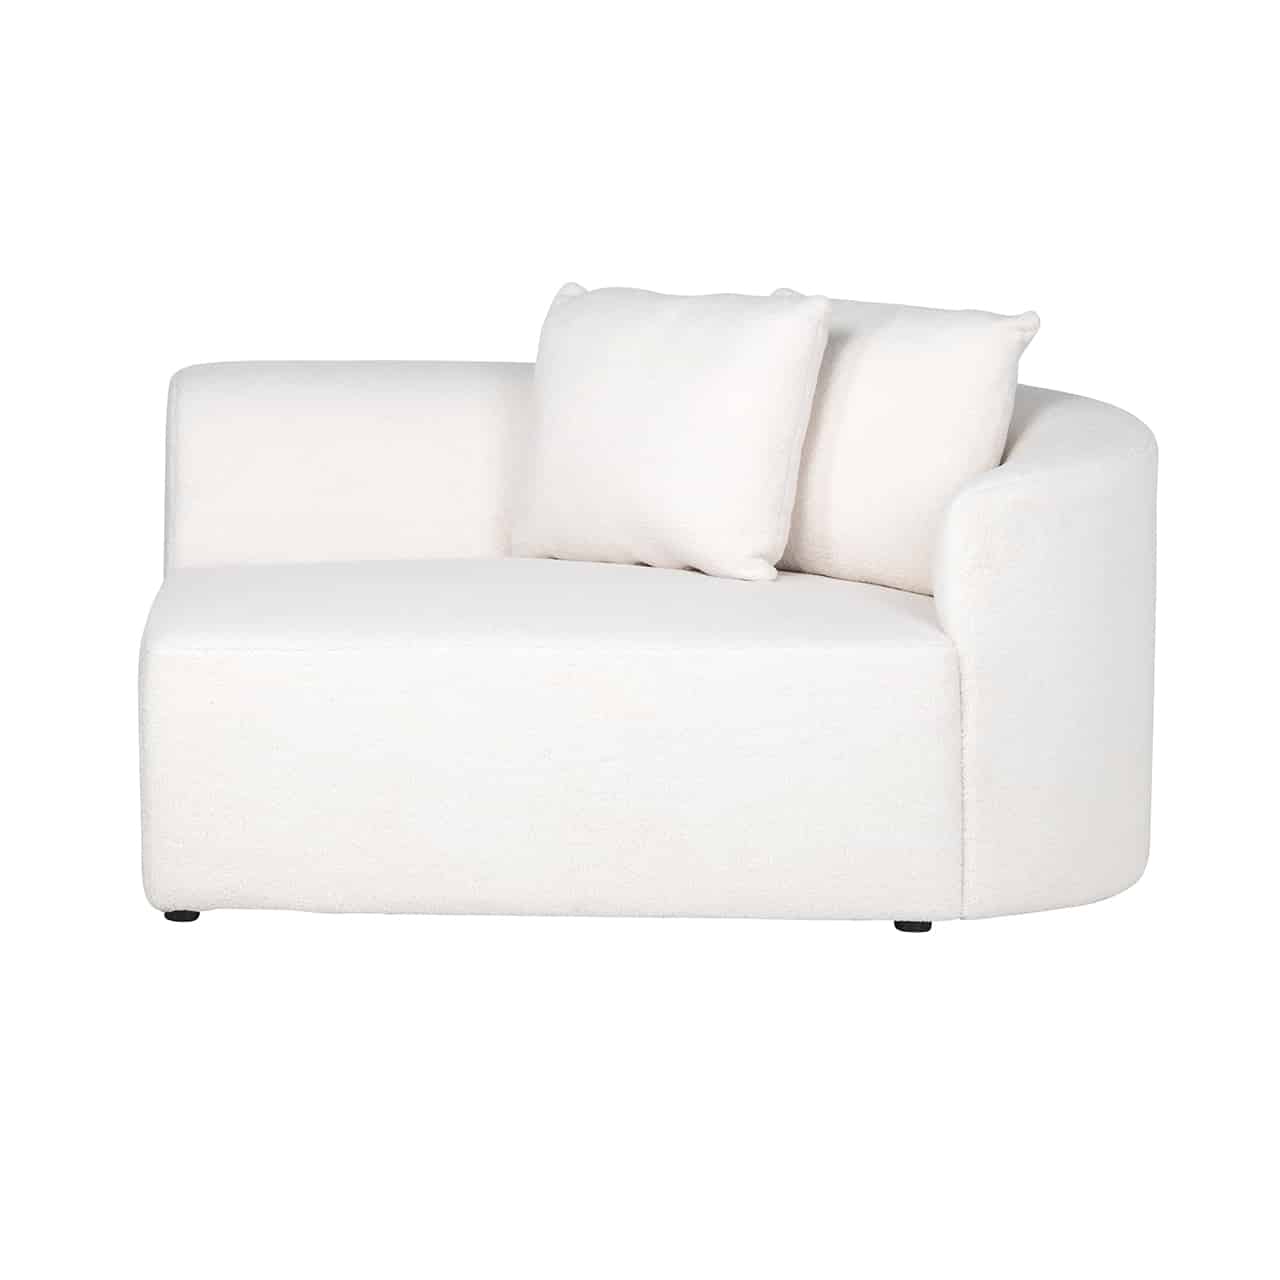  Eckmodul Arm rechts mit umlaufender, niedriger Lehne für eine weiße Couch, das Polster geht bis zum Boden;  darauf zwei quadratische Kissen.